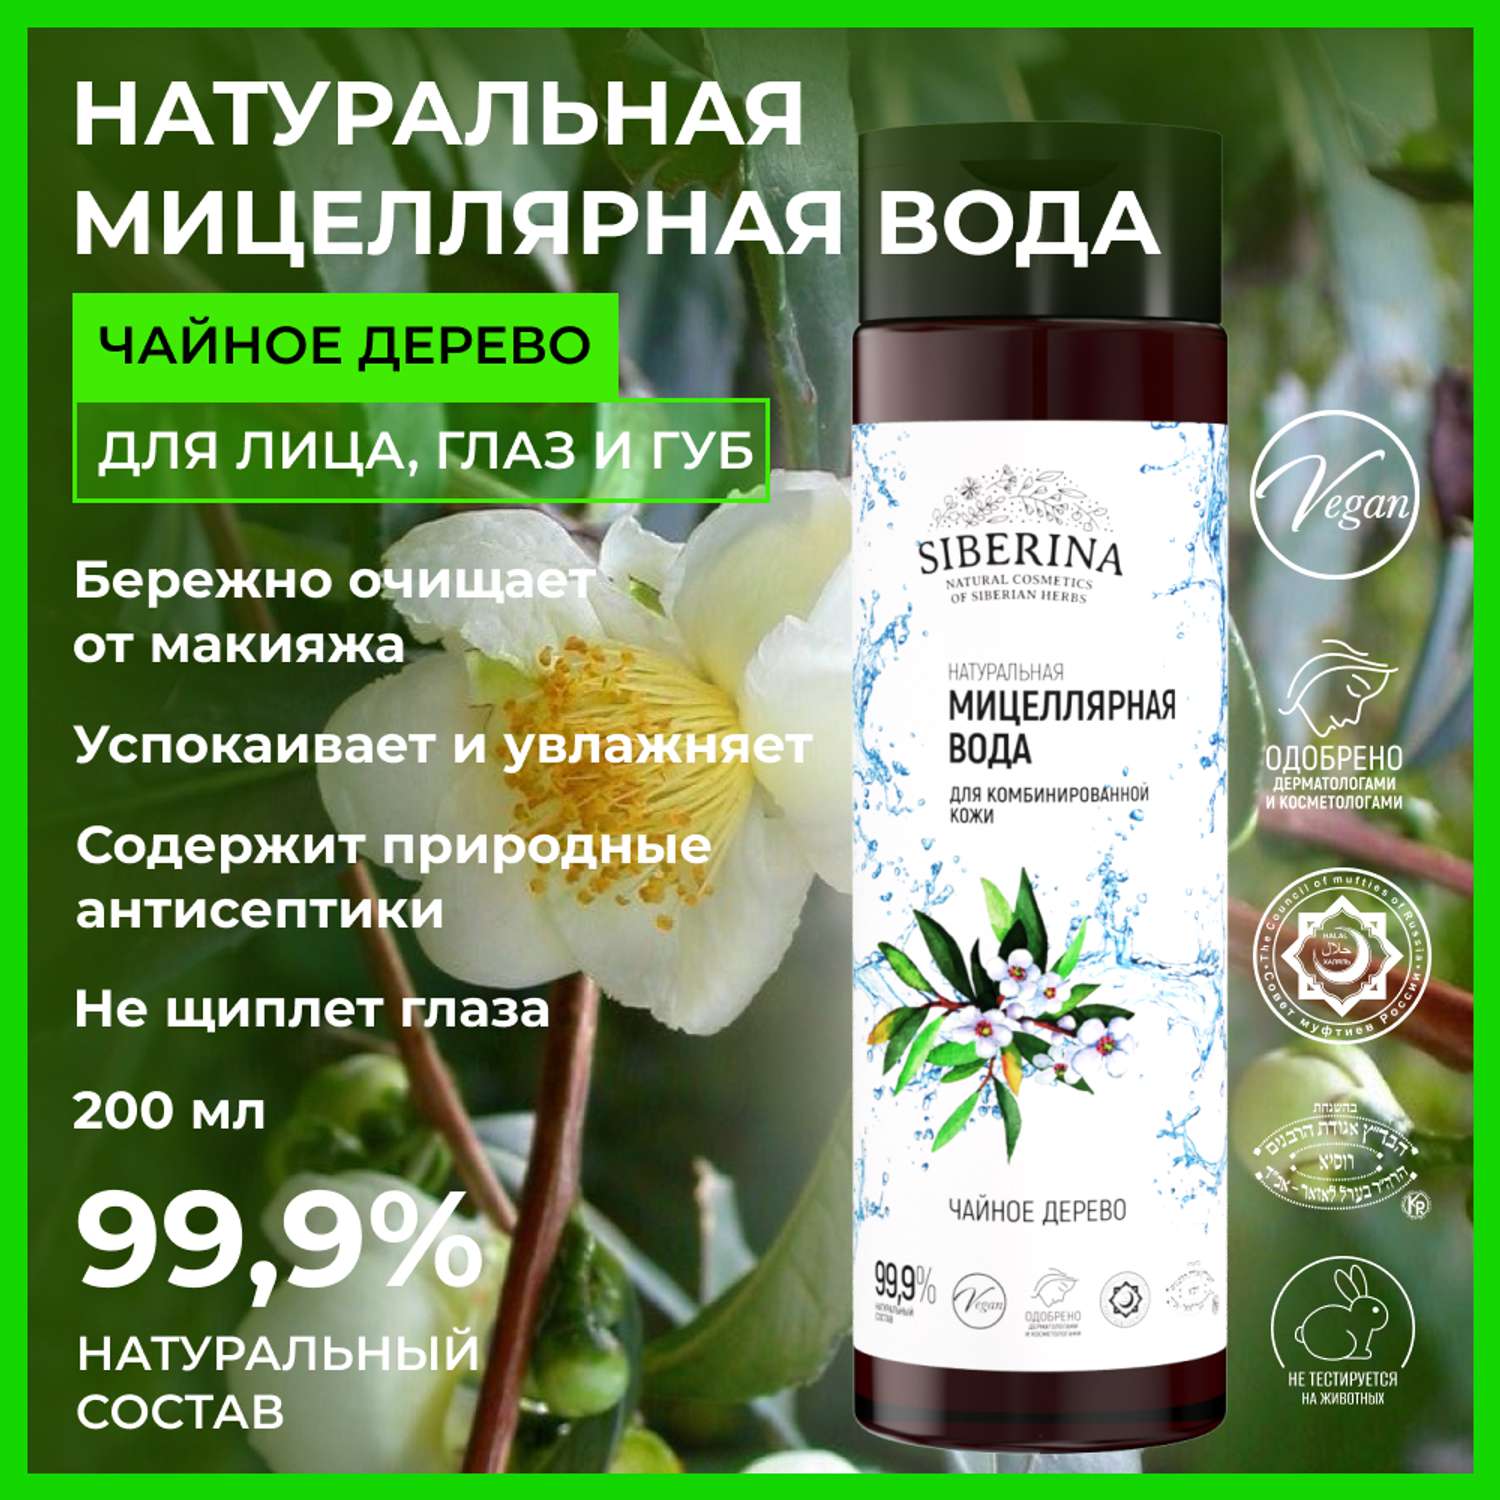 Мицеллярная вода Siberina натуральная «Чайное дерево» для проблемной кожи 200 мл - фото 2